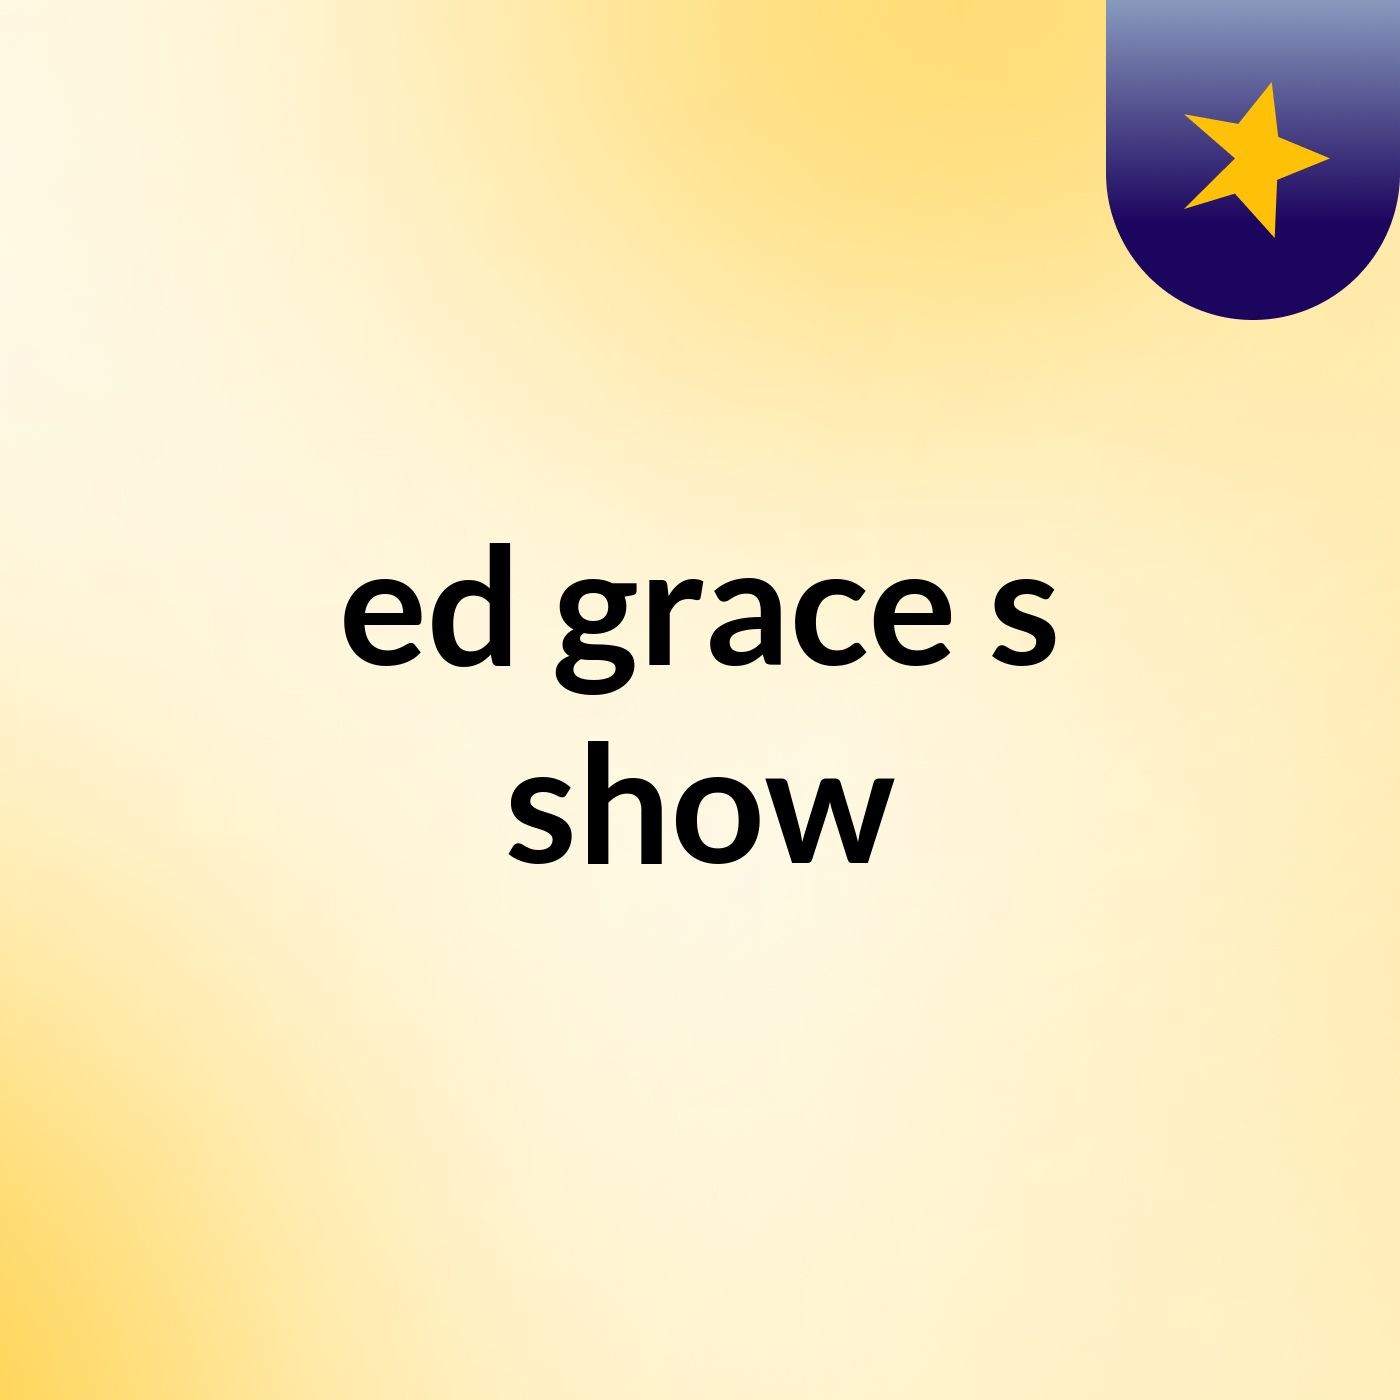 ed grace's show